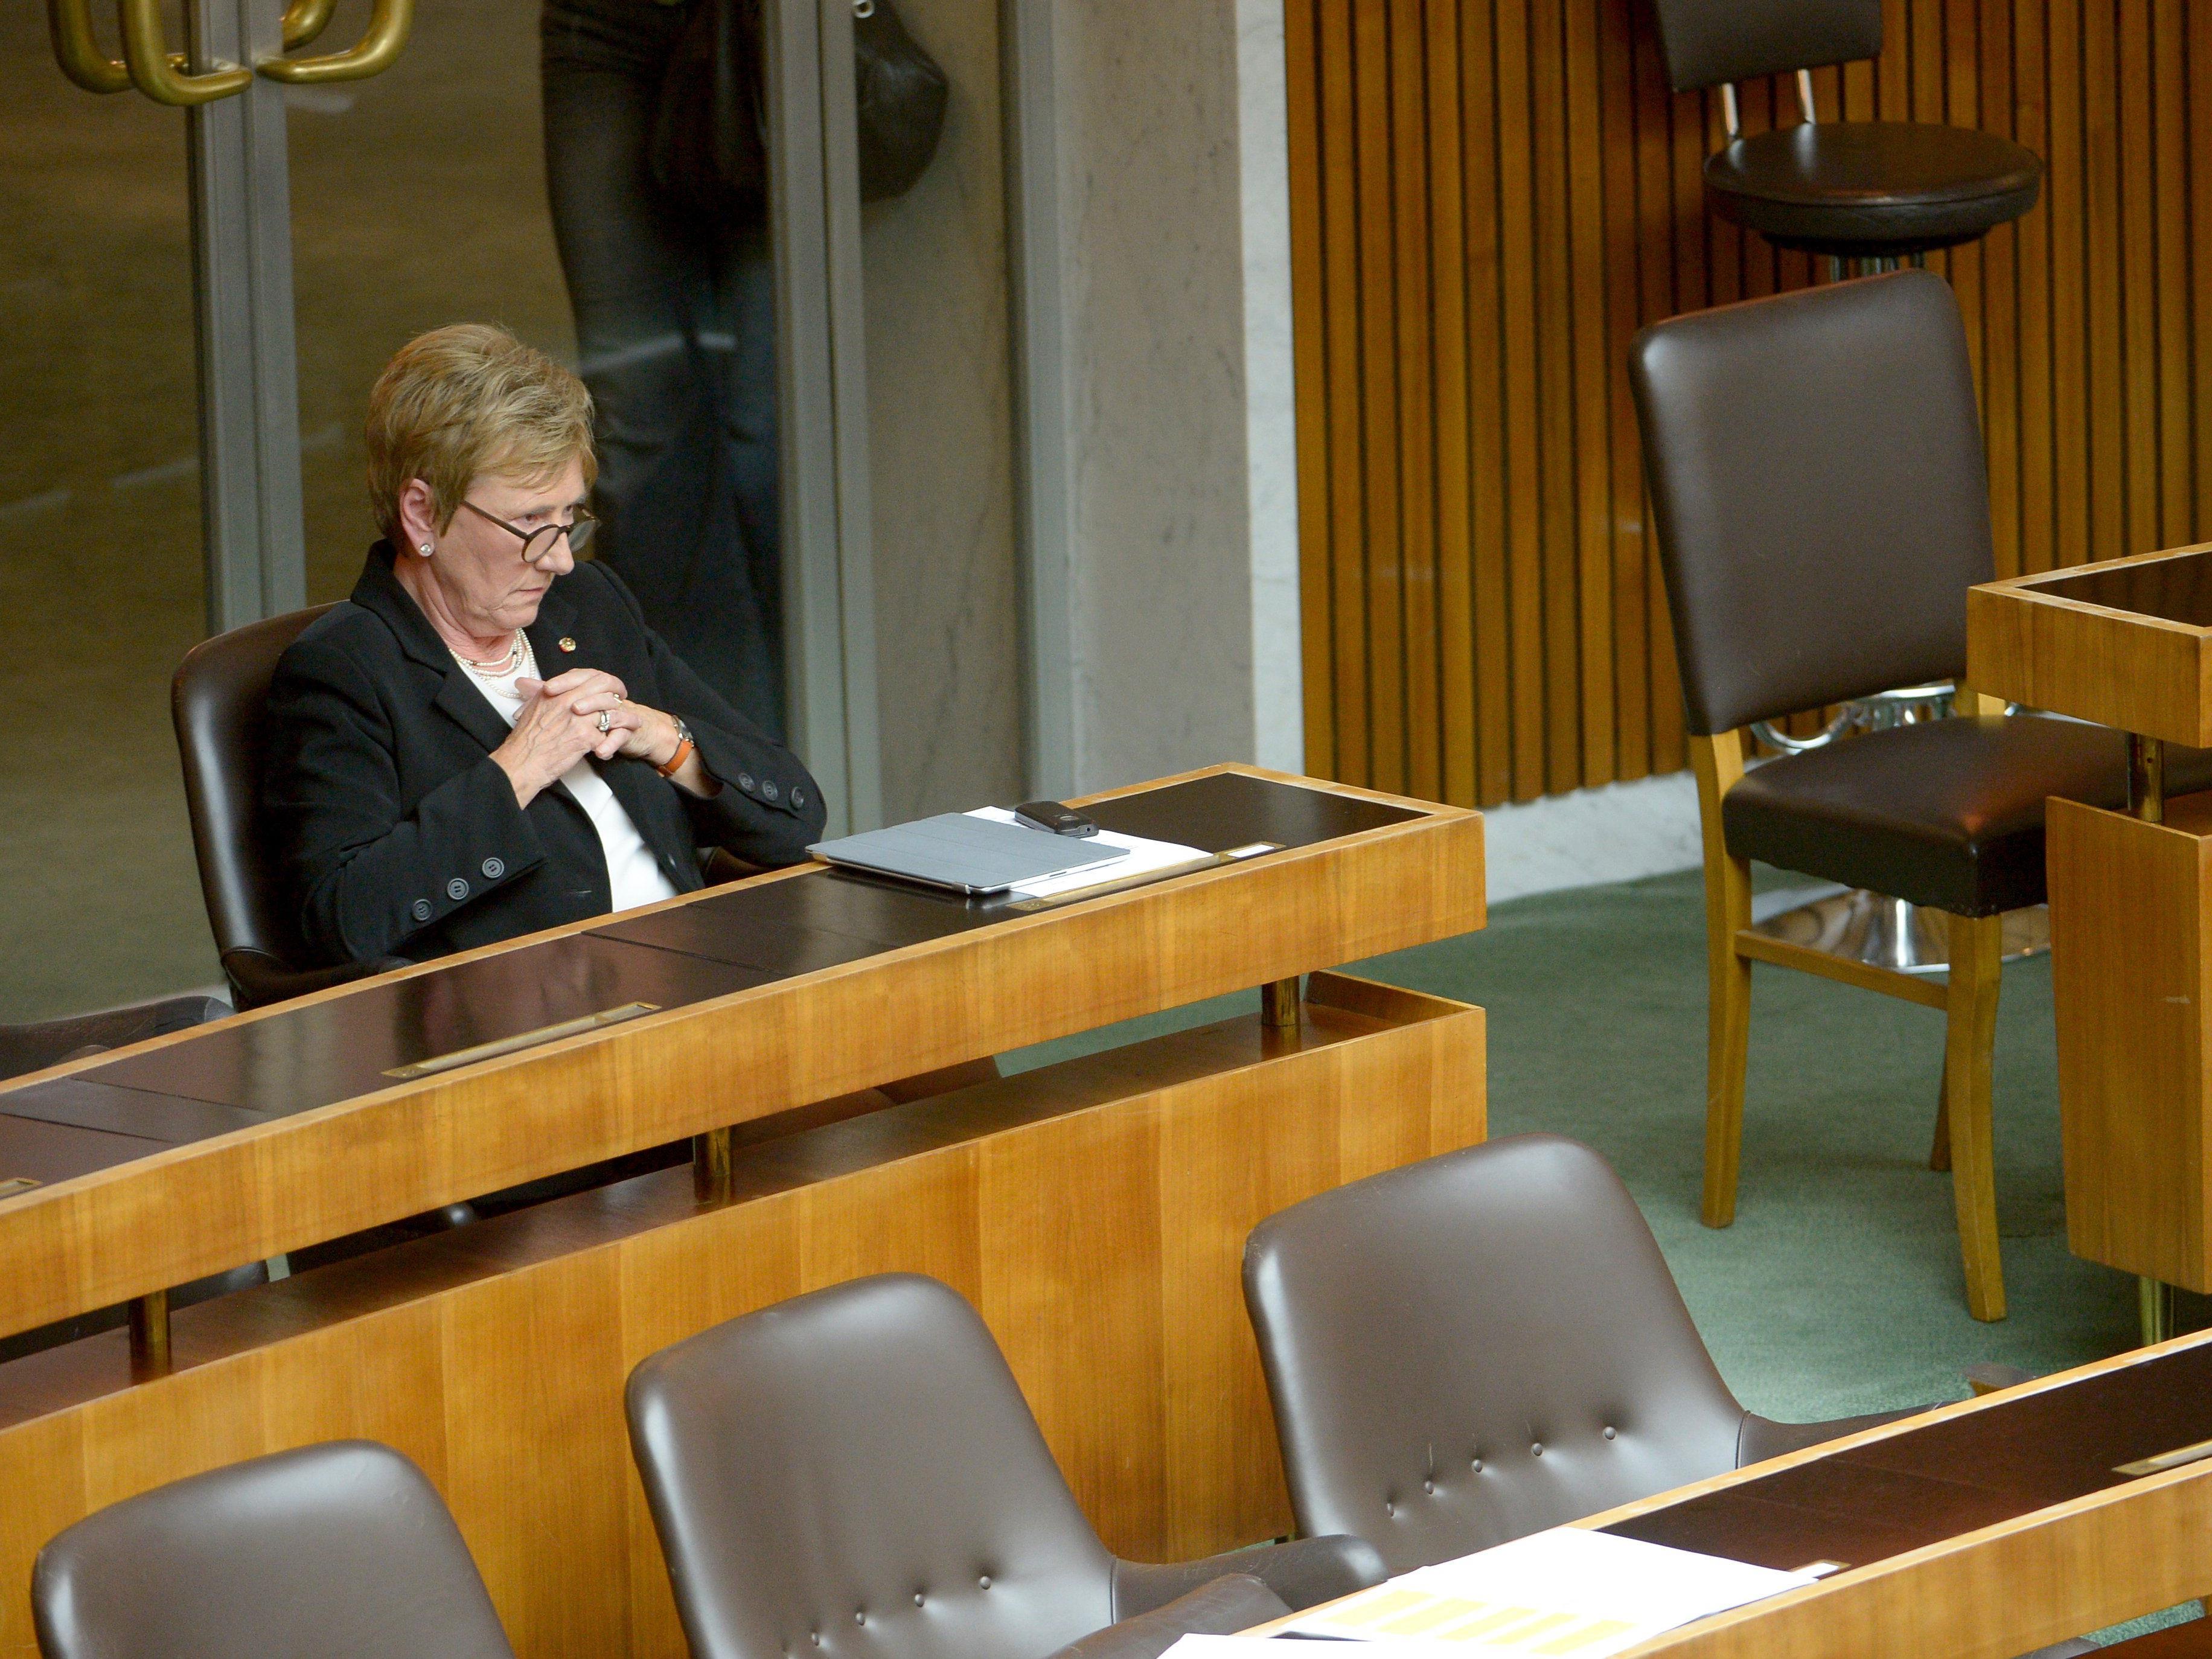 Monika Lindner legt Nationalratsmandat zurück: "Kampagne" gegen sie als Grund.